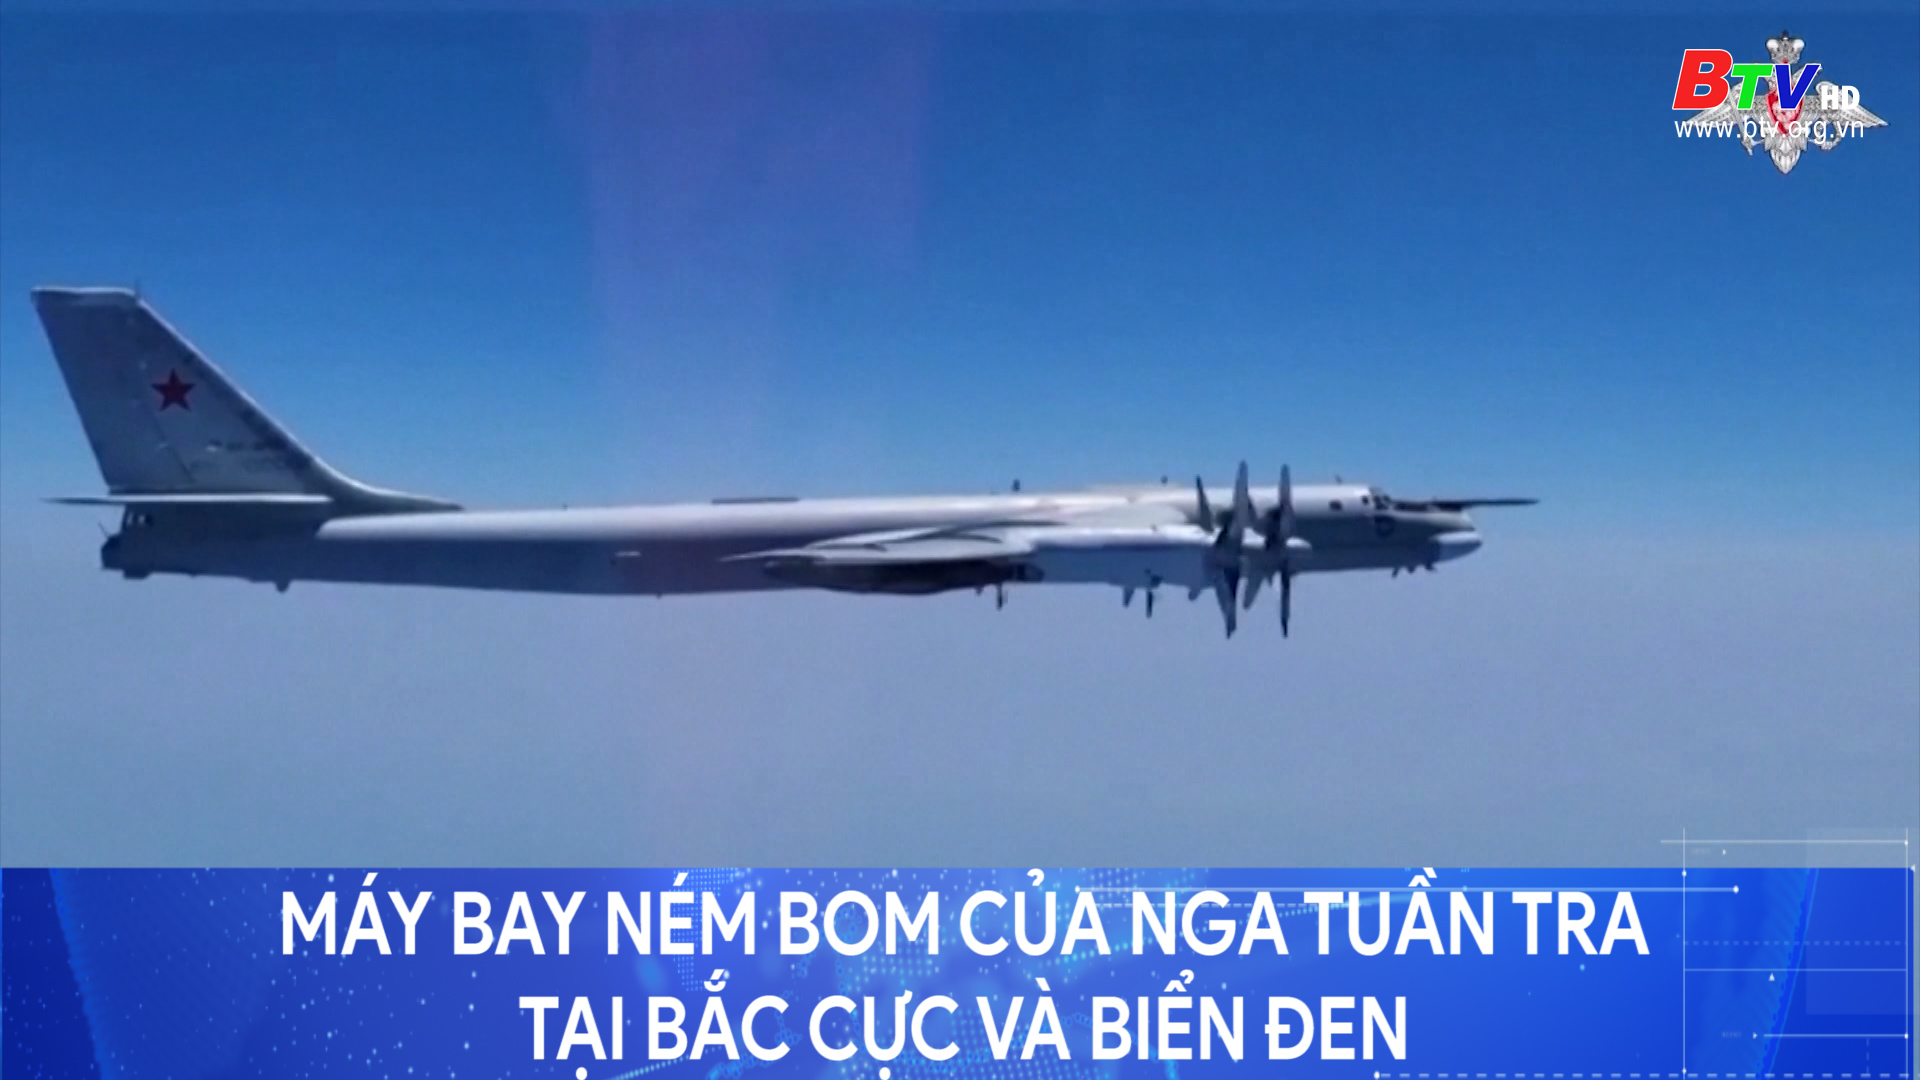 Máy bay ném bom của Nga tuần tra tại Bắc cực và Biển đen